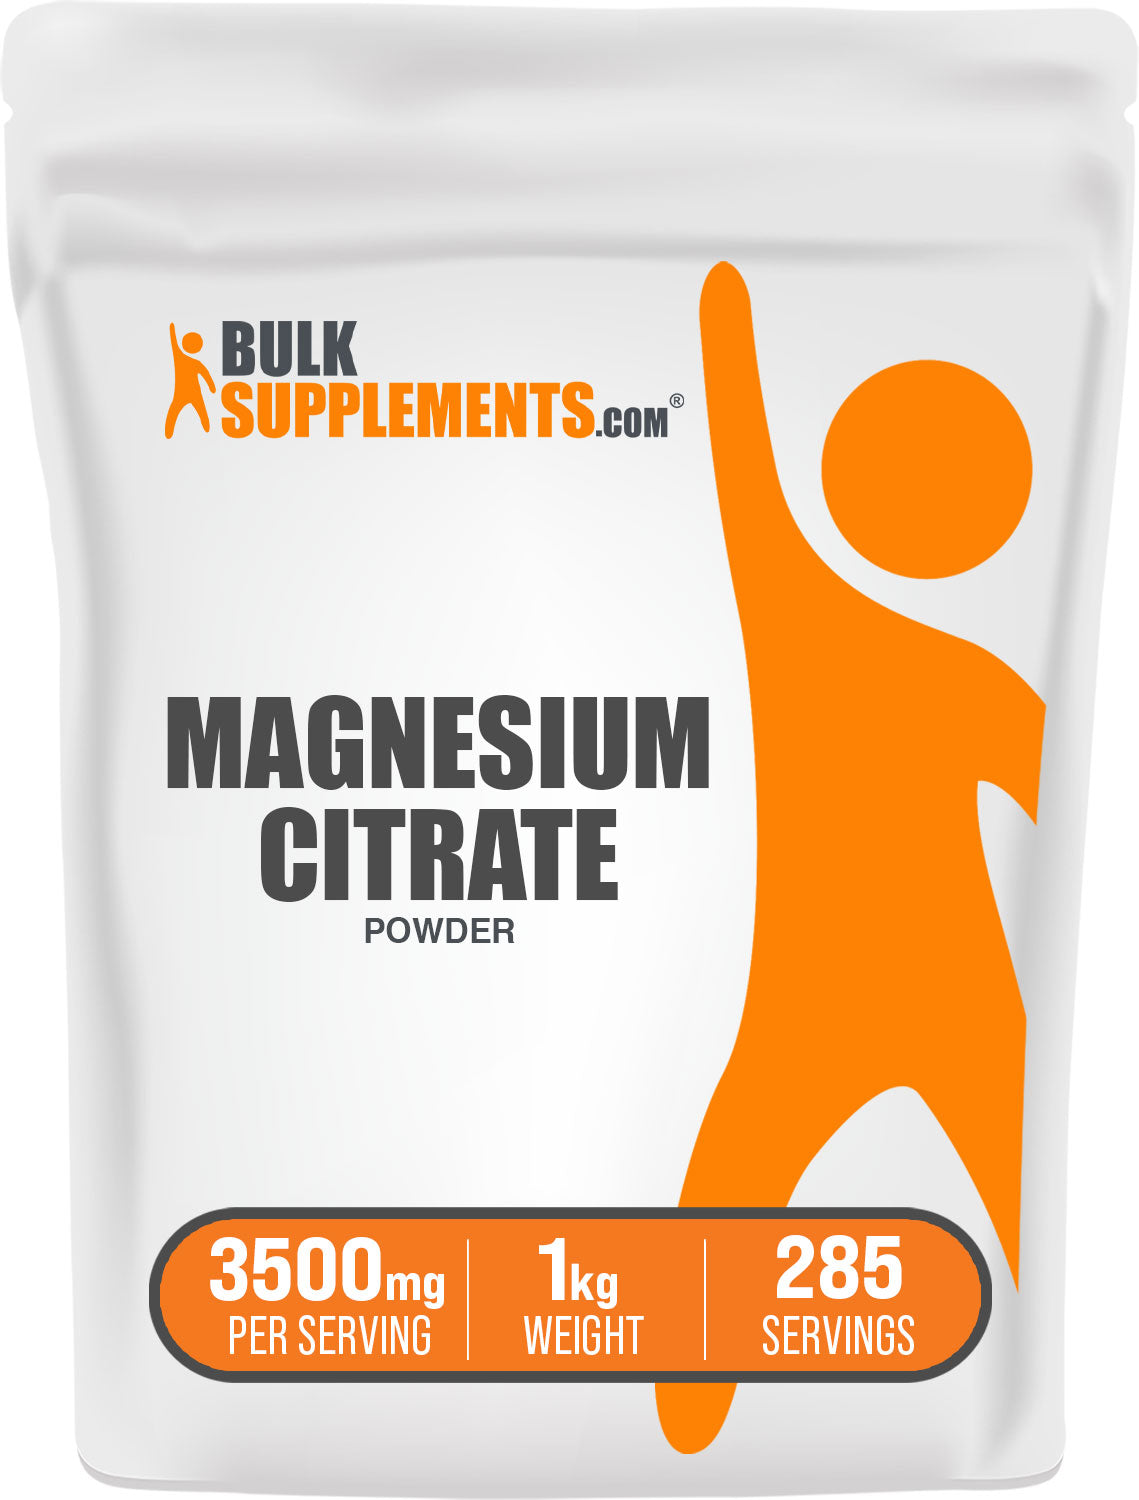 Magnesium citrate magnesium powder 1kg bag 